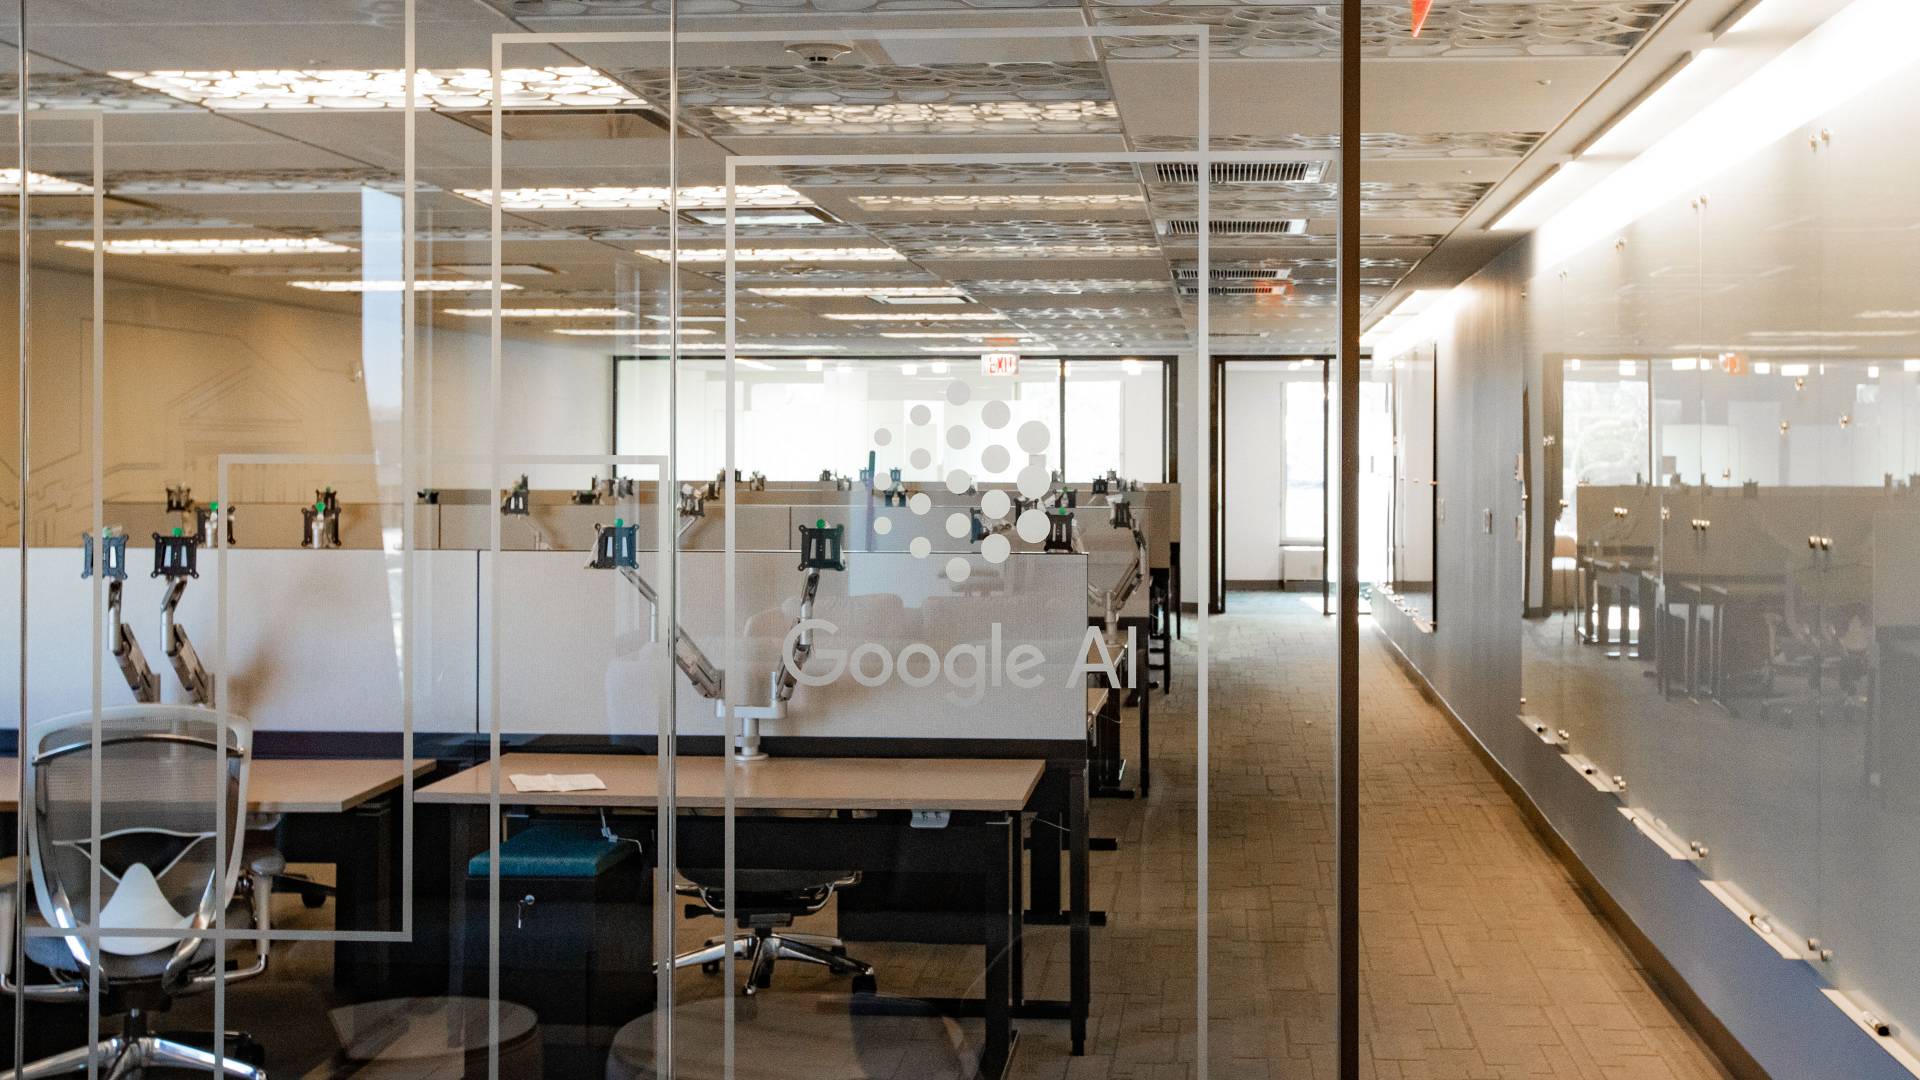 Office interior with desks in open floor plan. Google AI written on glass door.